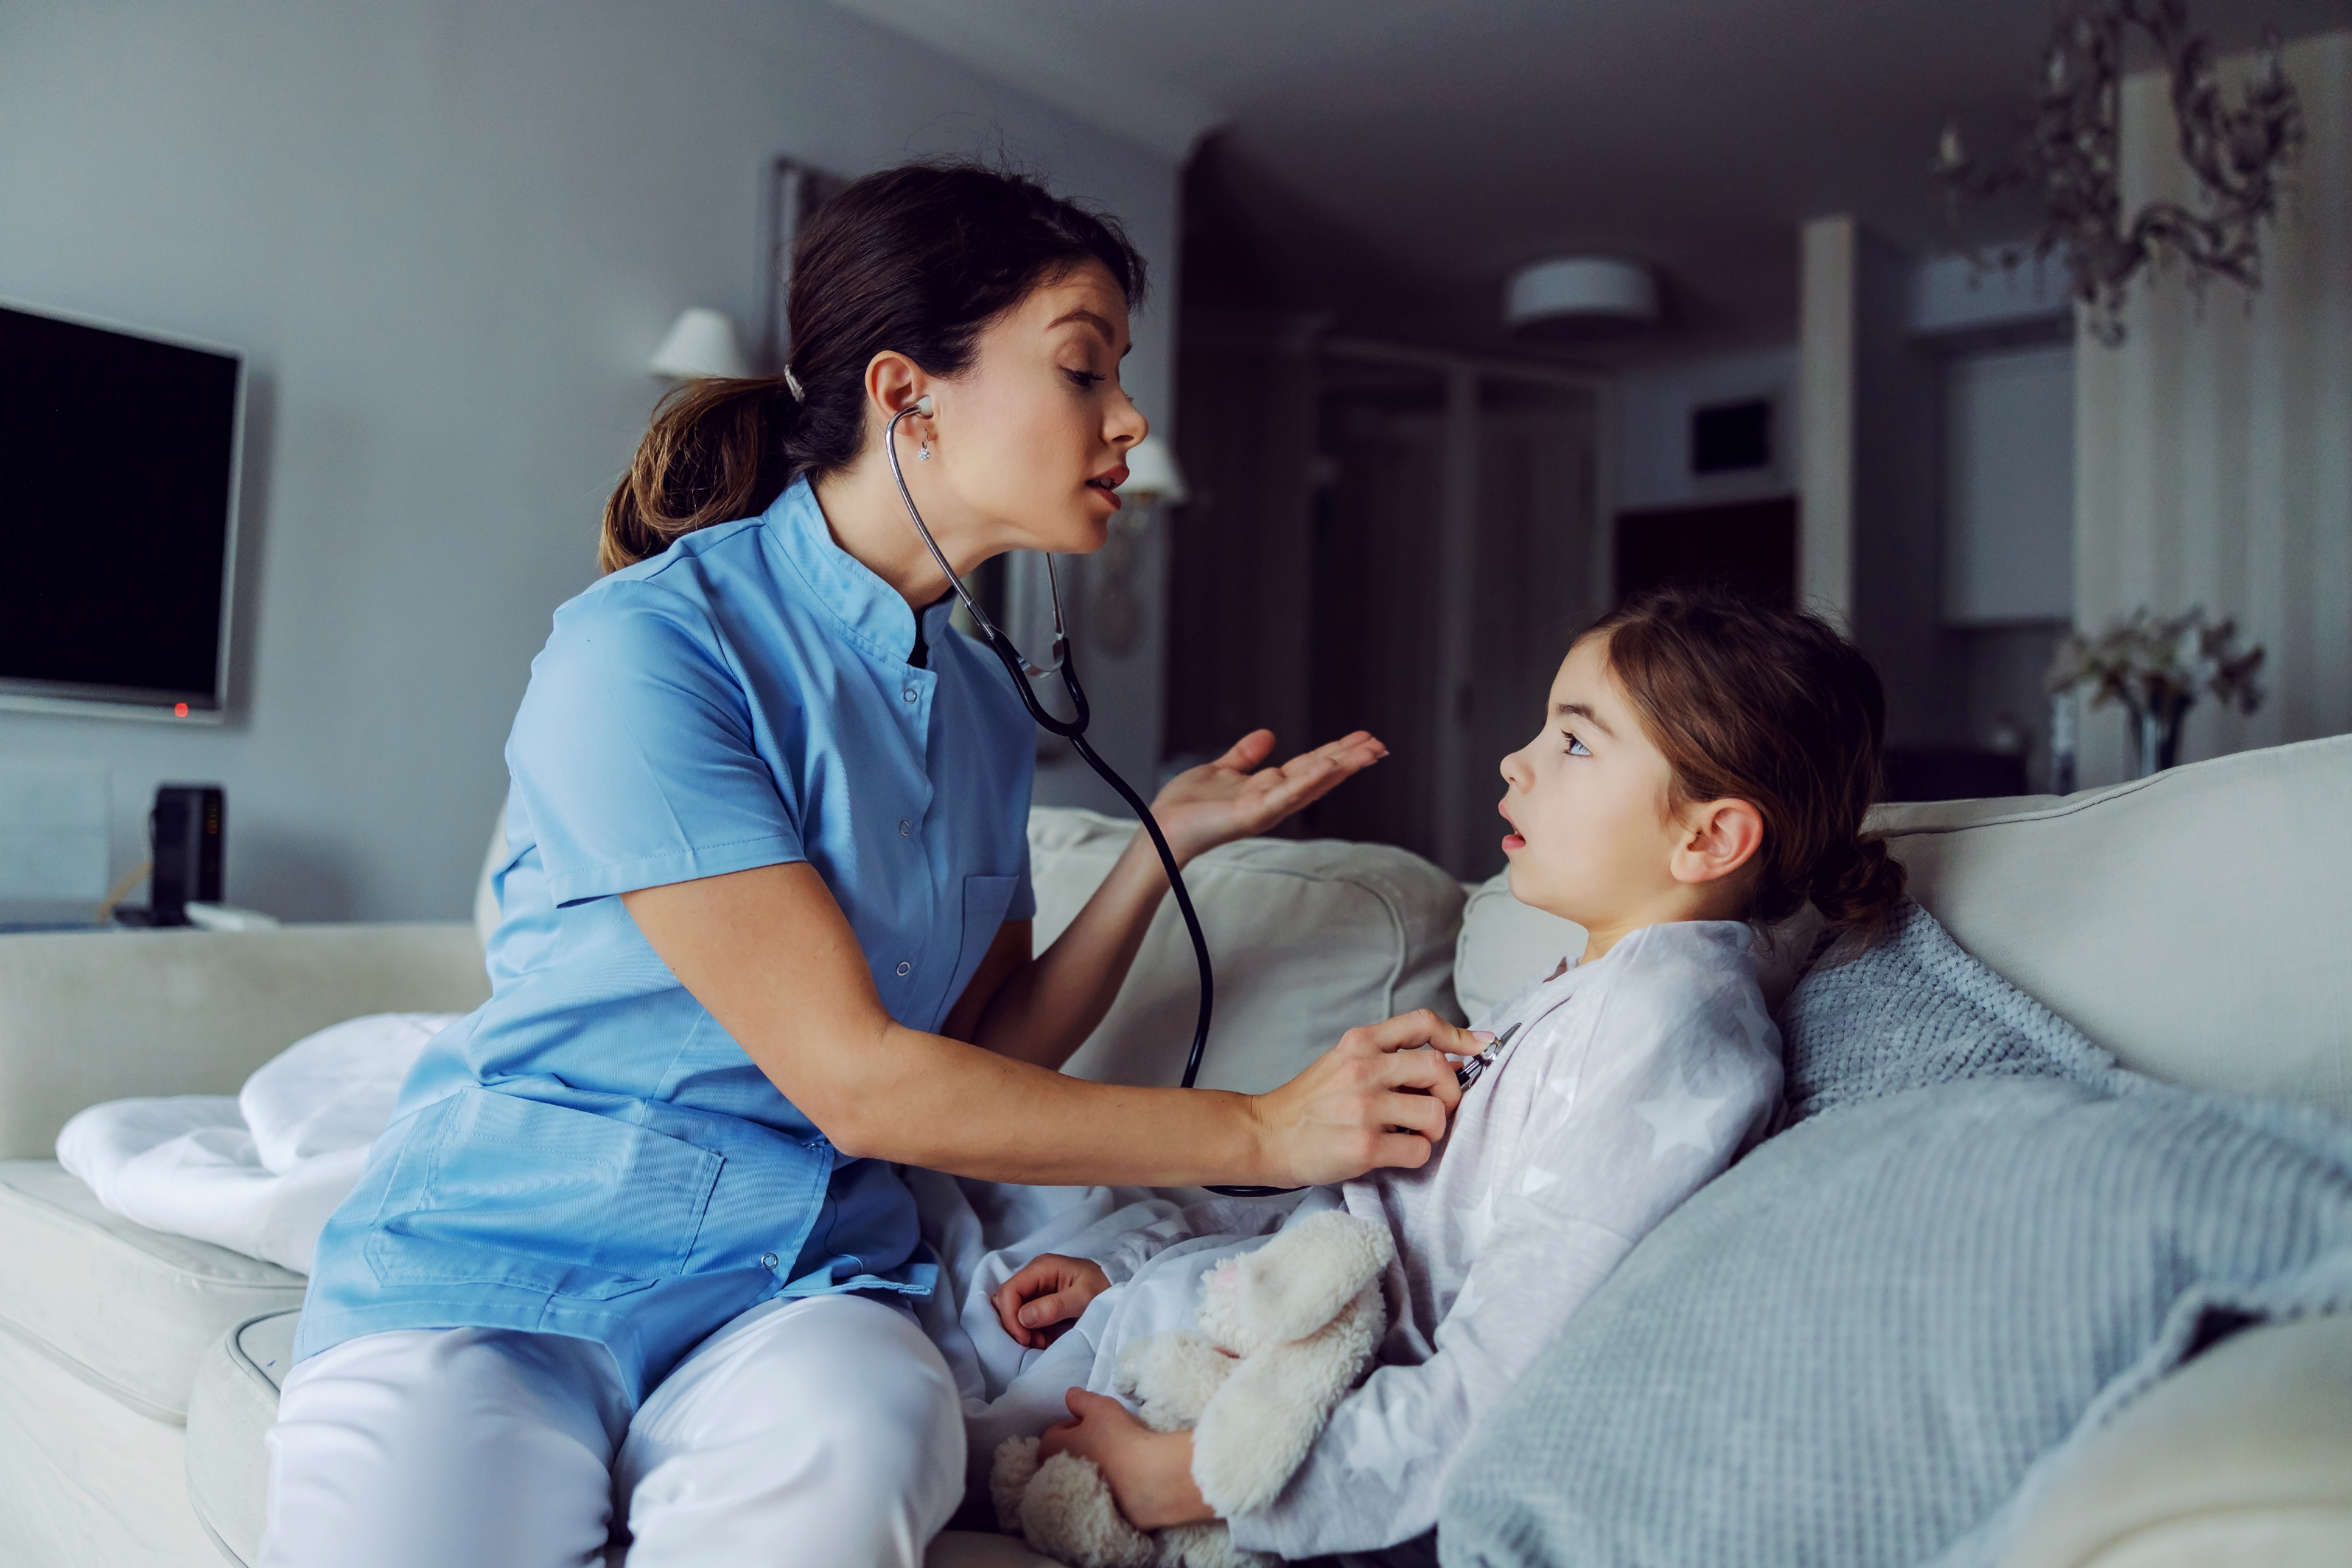 Médico sentado en un sofá junto a una niña y examinando sus pulmones con un estetoscopio | Fuente: Shutterstock.com